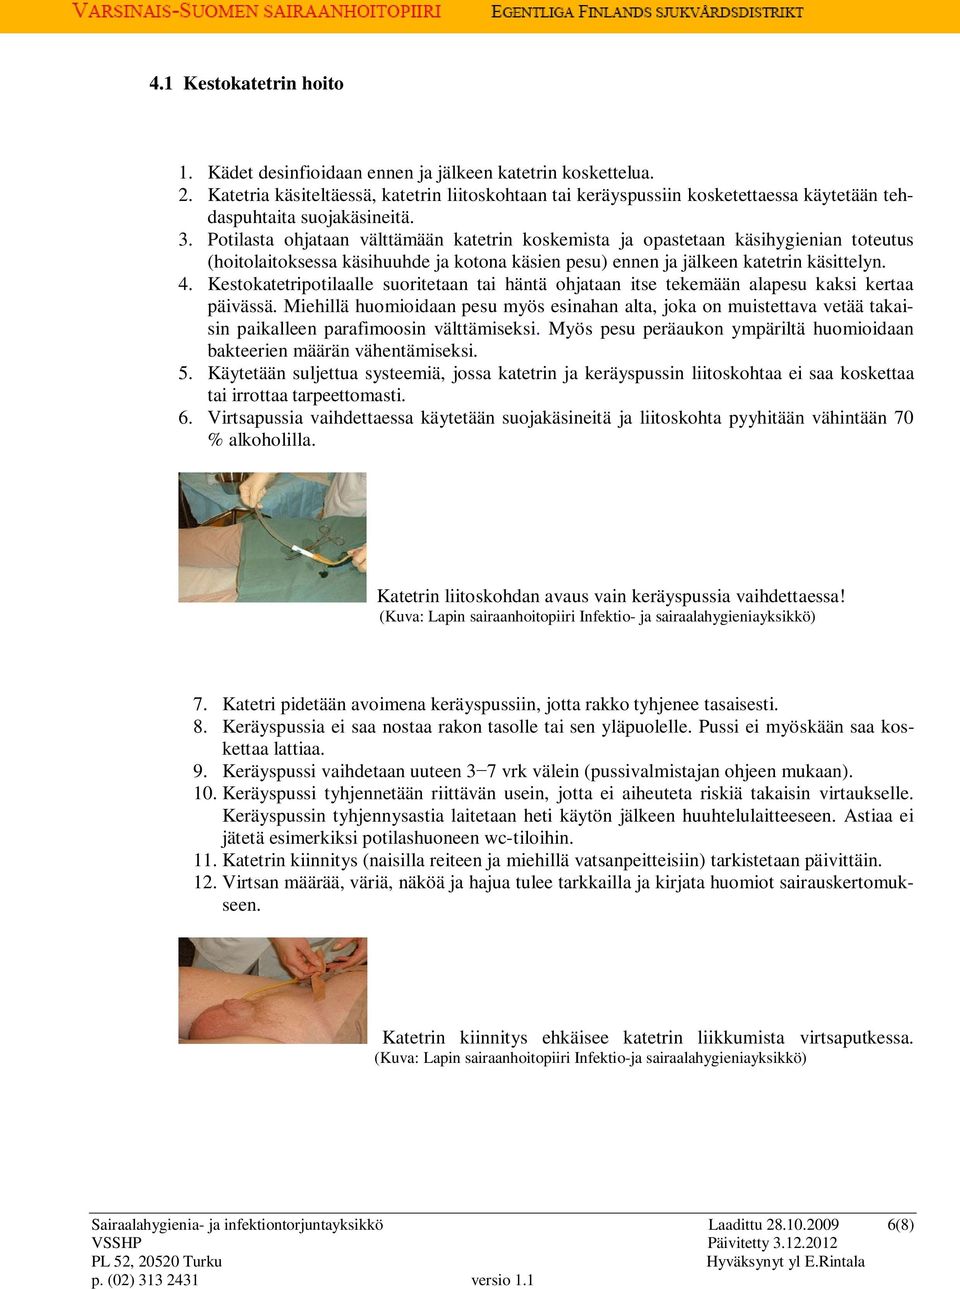 Potilasta ohjataan välttämään katetrin koskemista ja opastetaan käsihygienian toteutus (hoitolaitoksessa käsihuuhde ja kotona käsien pesu) ennen ja jälkeen katetrin käsittelyn. 4.